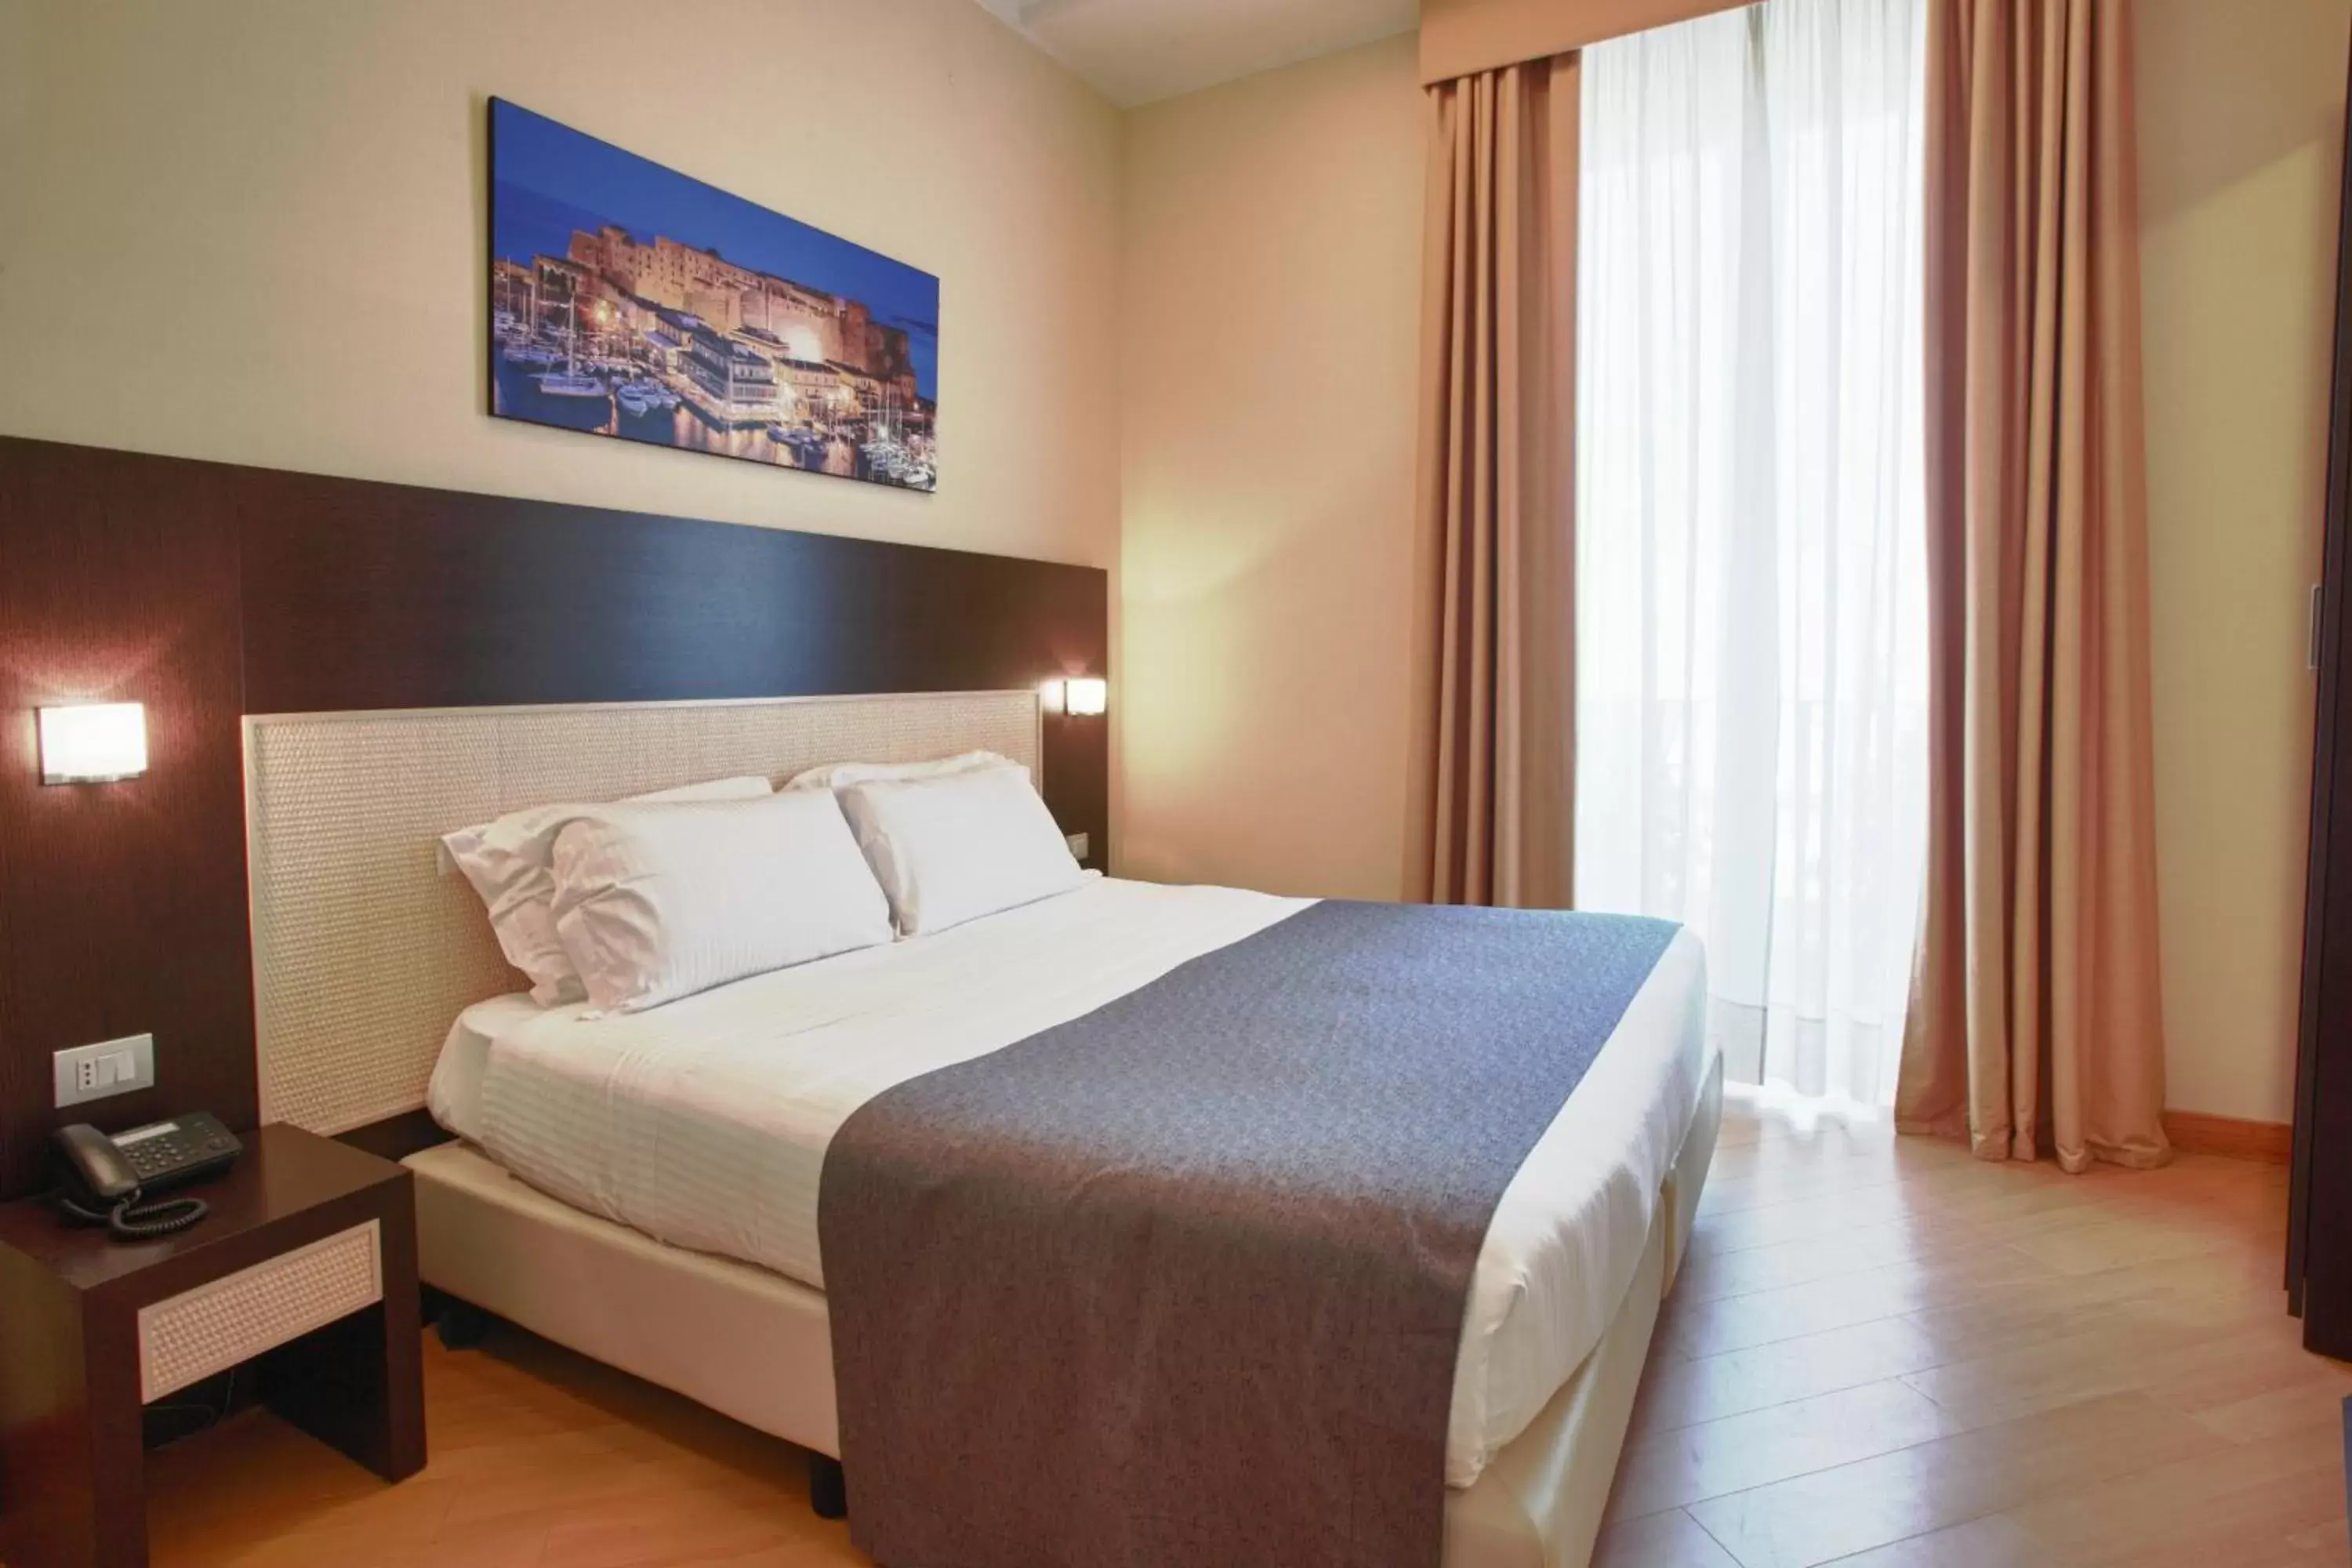 Bedroom, Room Photo in Hotel Naples